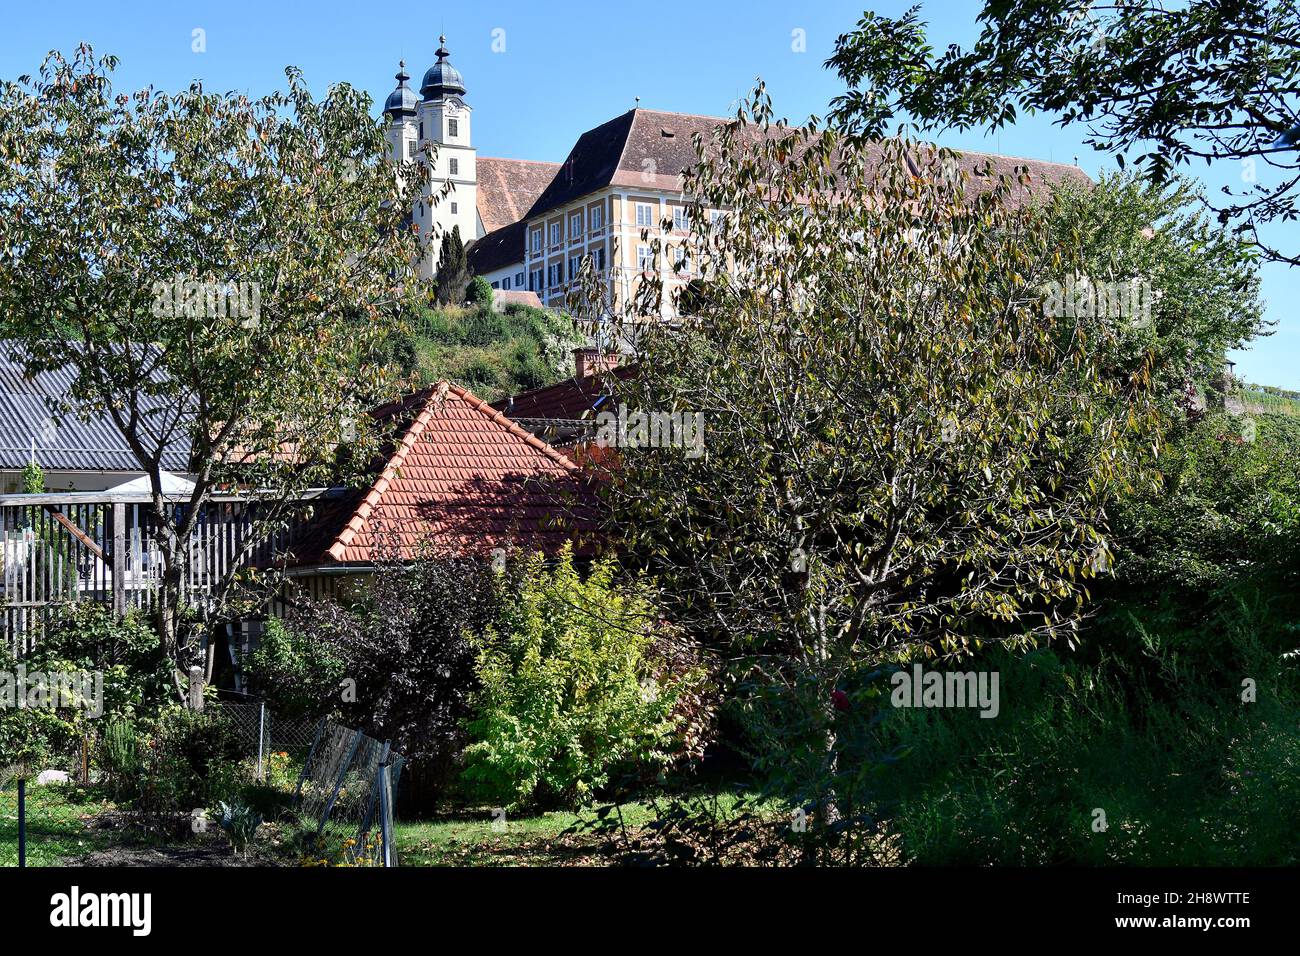 Stainz, Österreich - 23. September 2021: Das Schloss Stainz, ein ehemaliges Augustinerkloster mit Barockkirche, beherbergt heute ein Jagdmuseum und ein Agricu Stockfoto